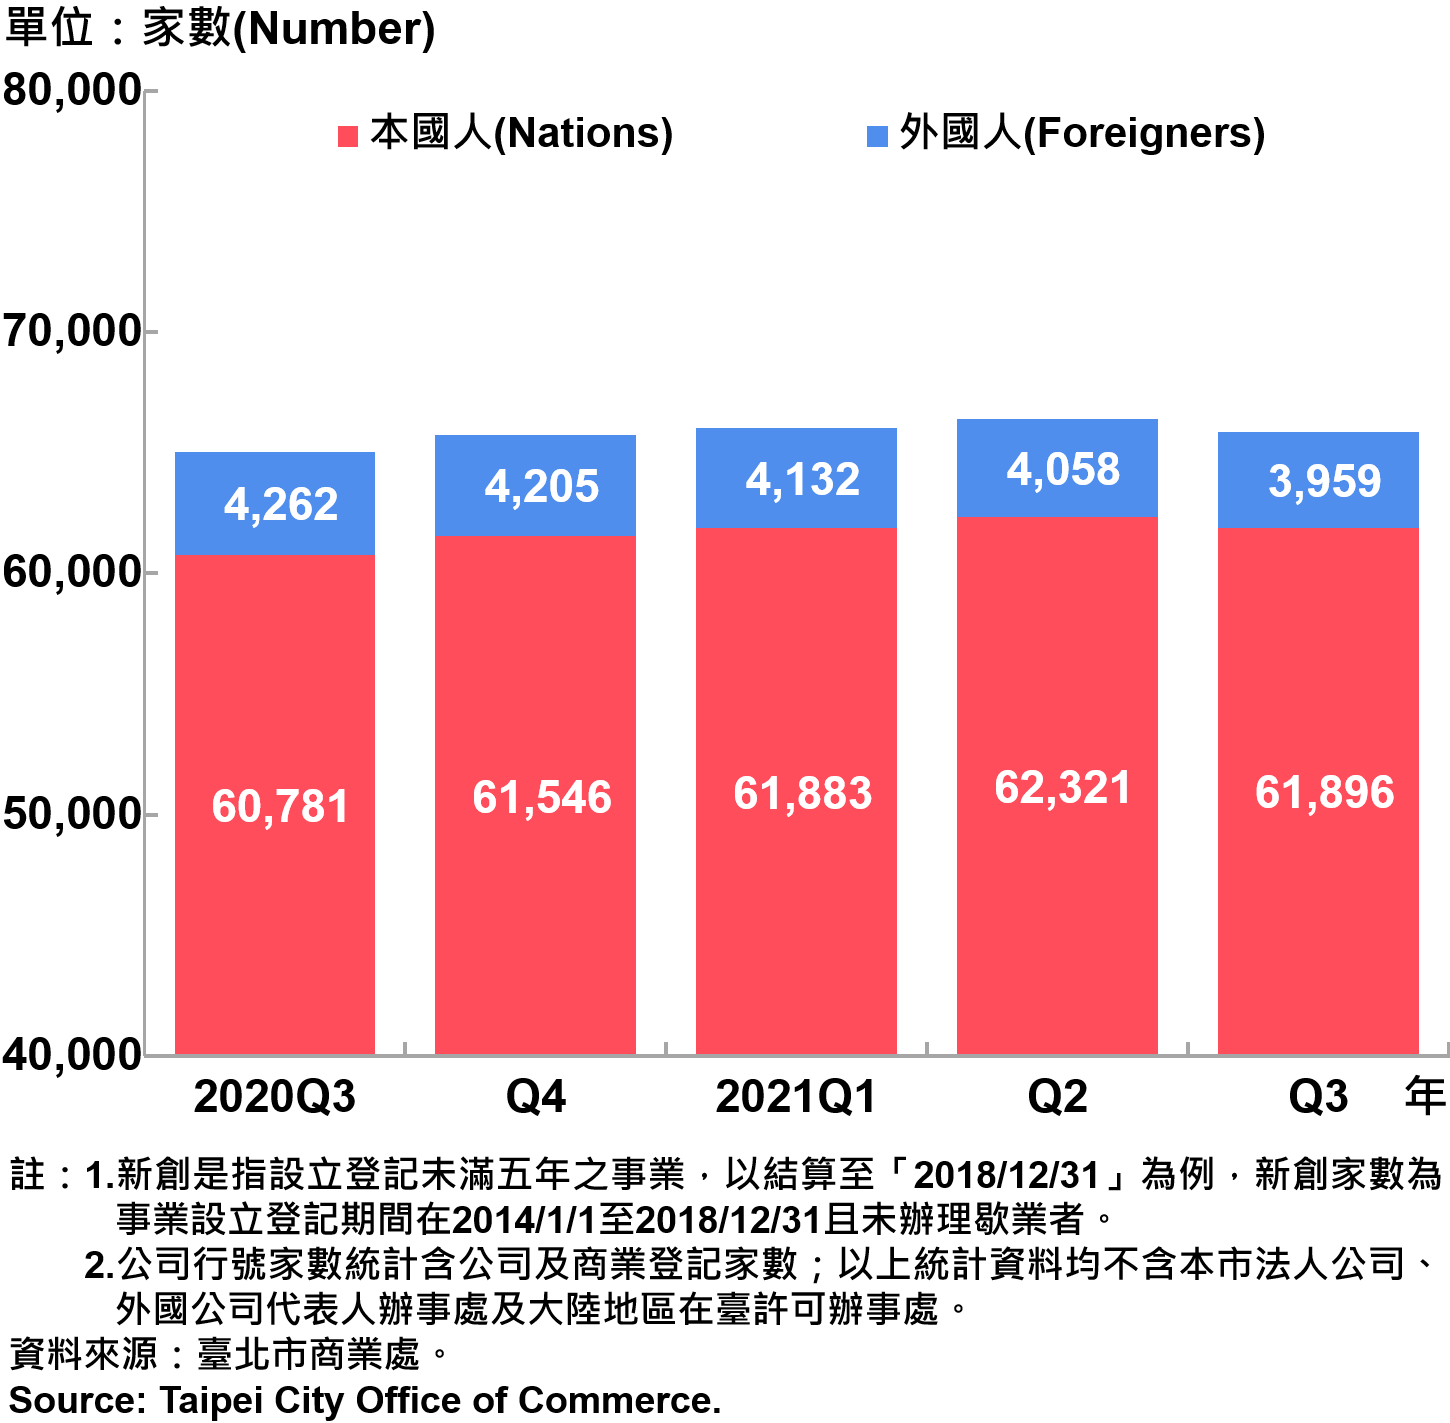 臺北市新創公司負責人-本國人與外國人分布情形-現存家數—2021Q3　Responsible Person of Newly Registered Companies In Taipei City by Nationality - Number of Current—2021Q3